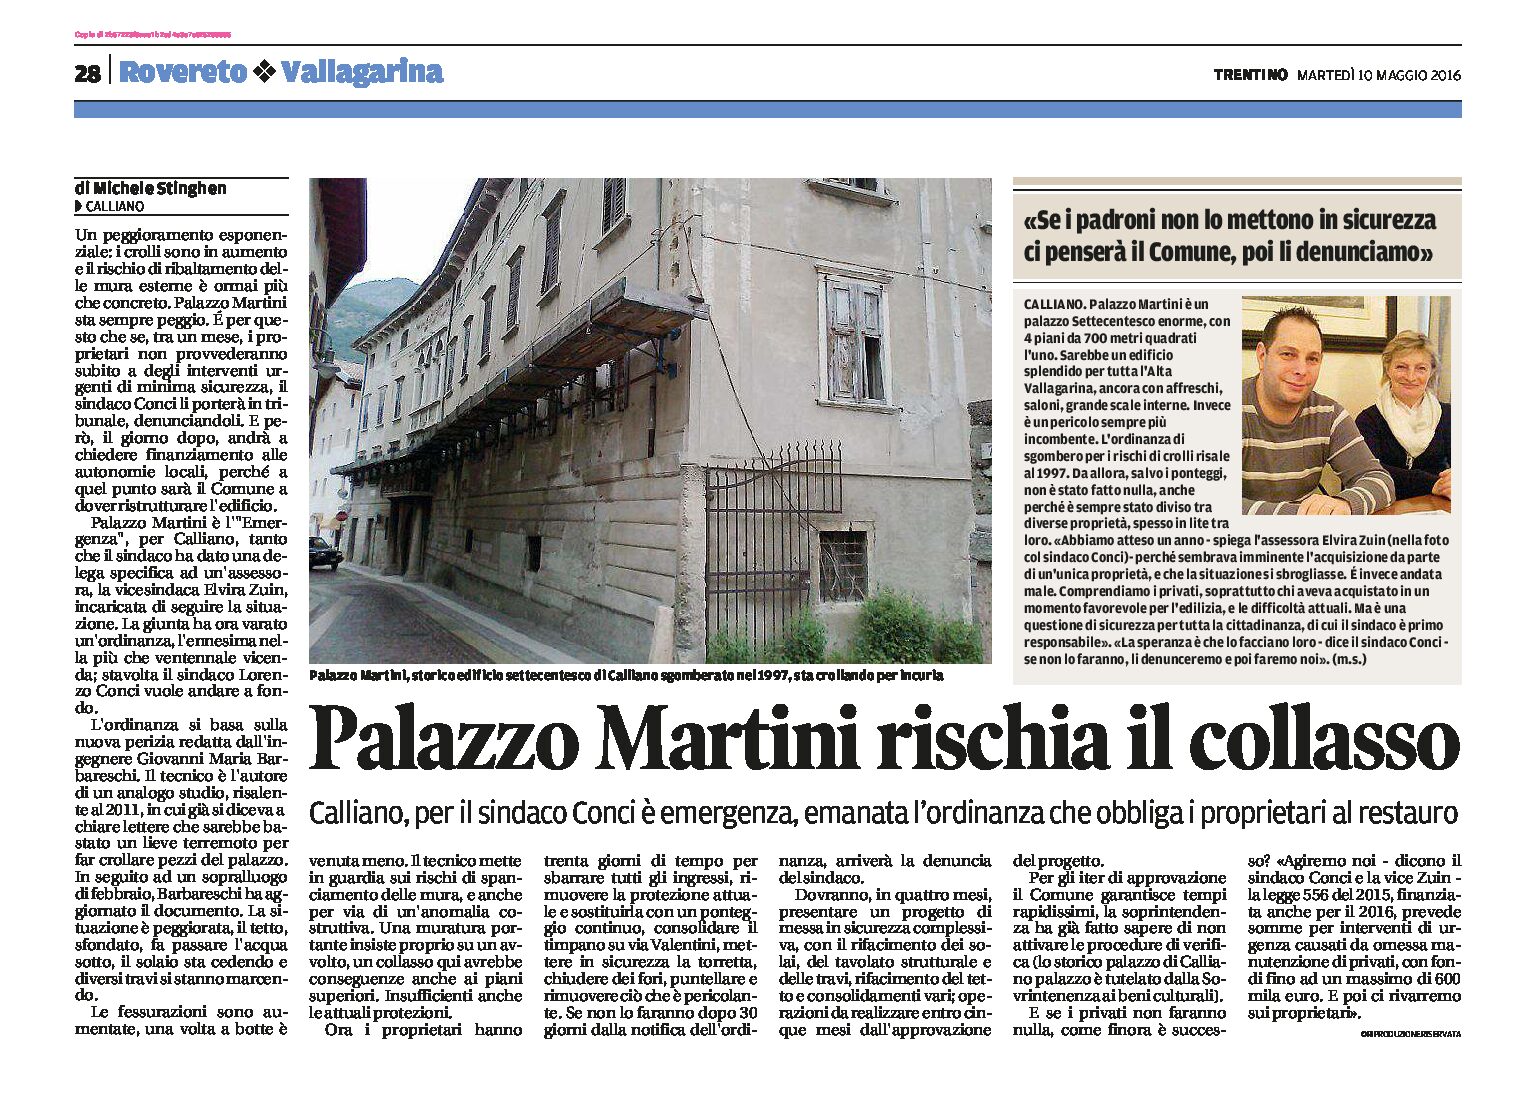 Calliano: Palazzo Martini rischia il collasso